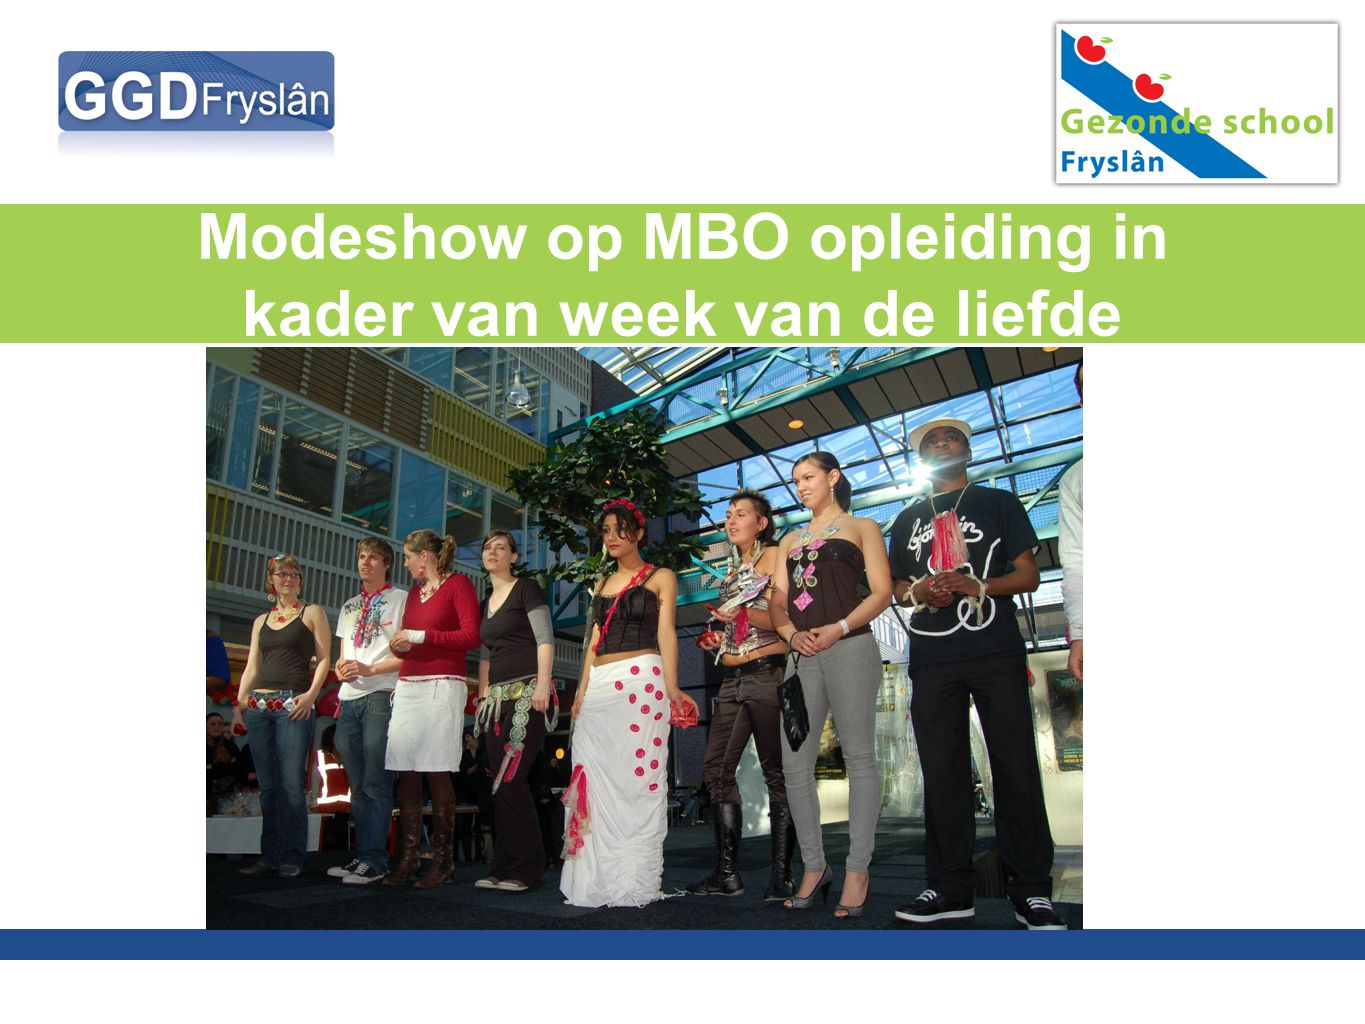 Modeshow op MBO opleiding in kader van week van de liefde